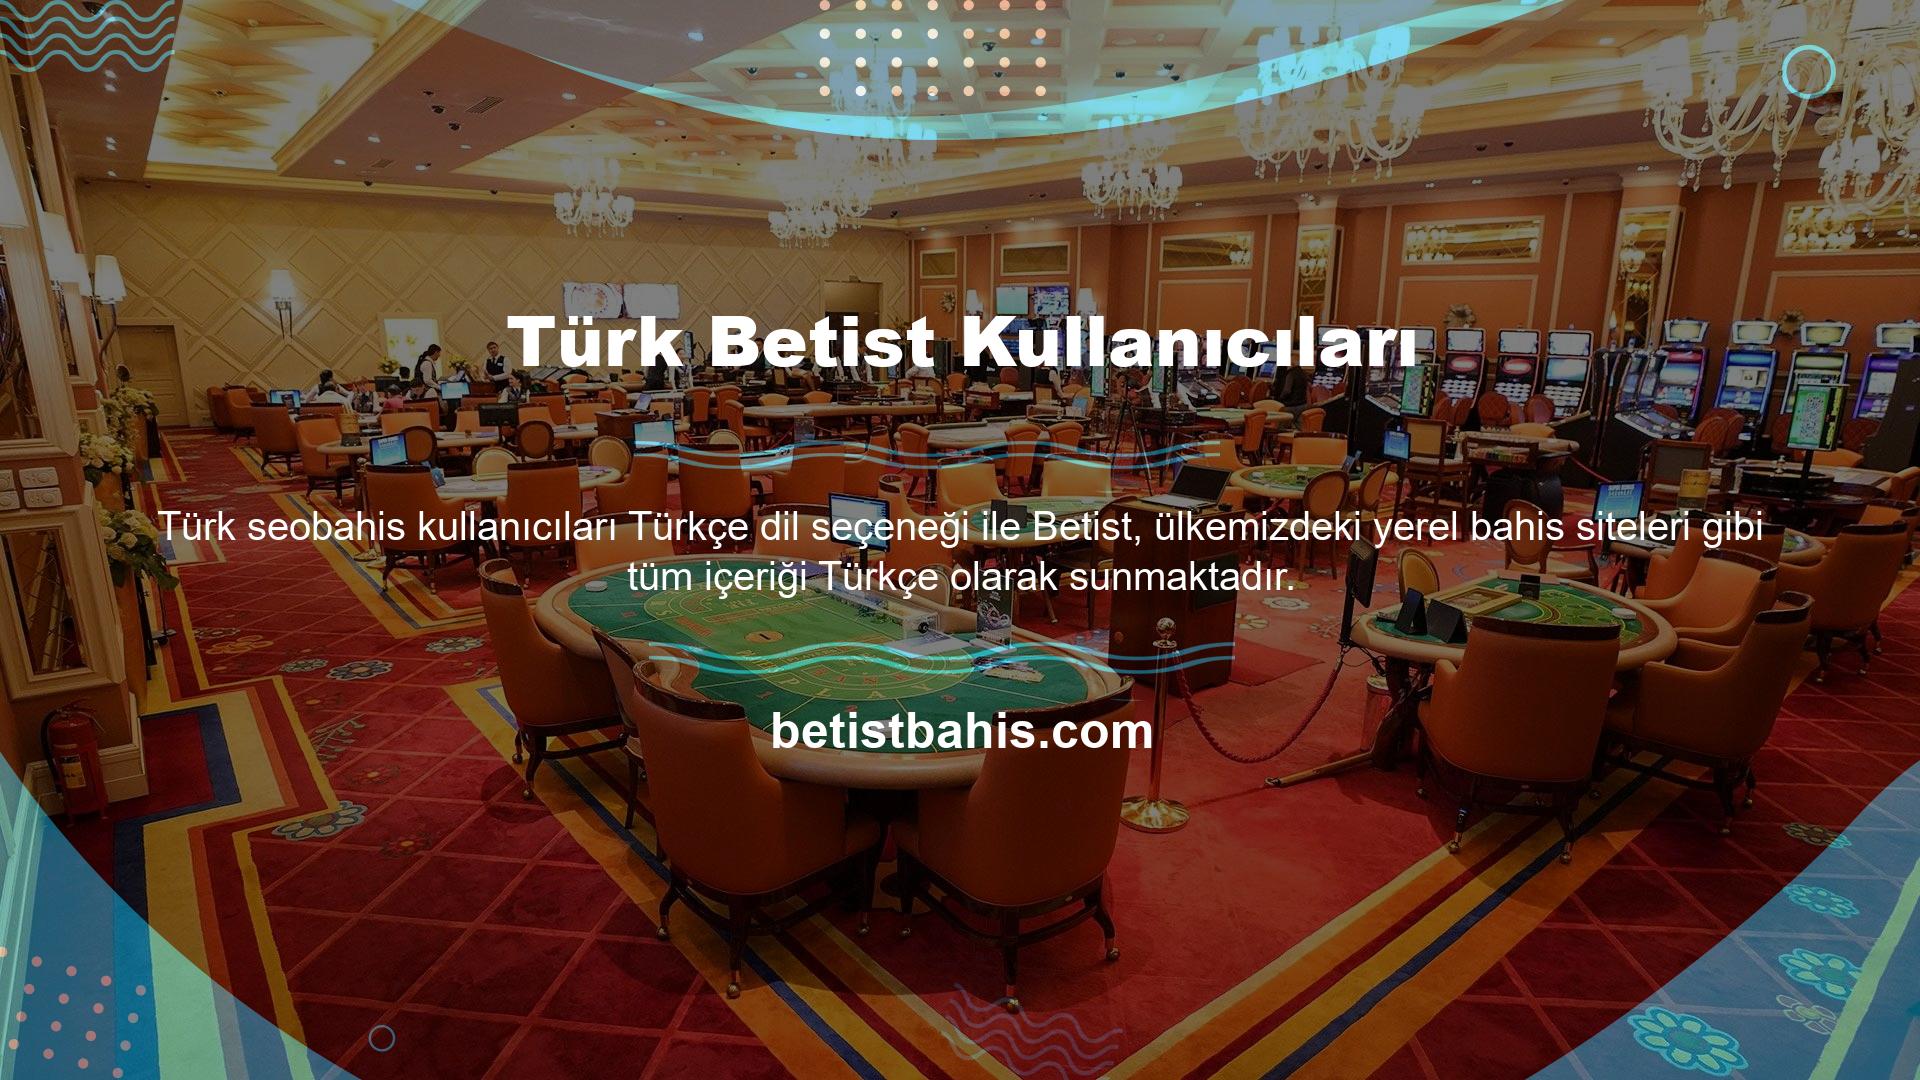 Türk kullanıcılar yeni giriş adreslerini kullanarak üyelik formlarını doldurabilir, oyun seçebilir, para yatırabilir ve tüm işlemlerini Türkçe olarak gerçekleştirebilirler